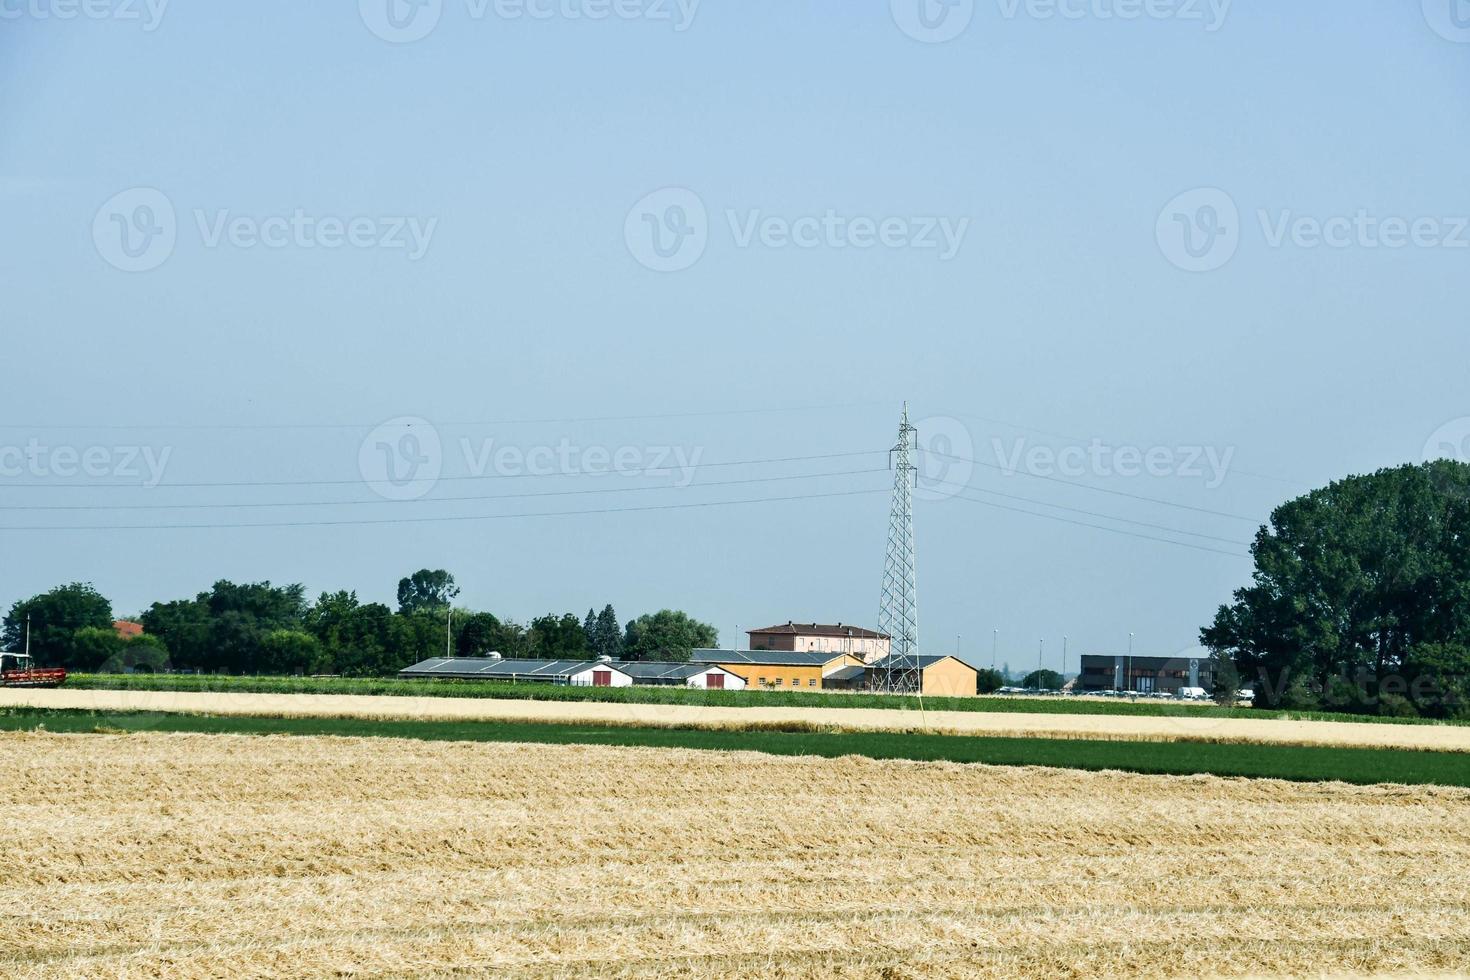 escénico rural paisaje foto